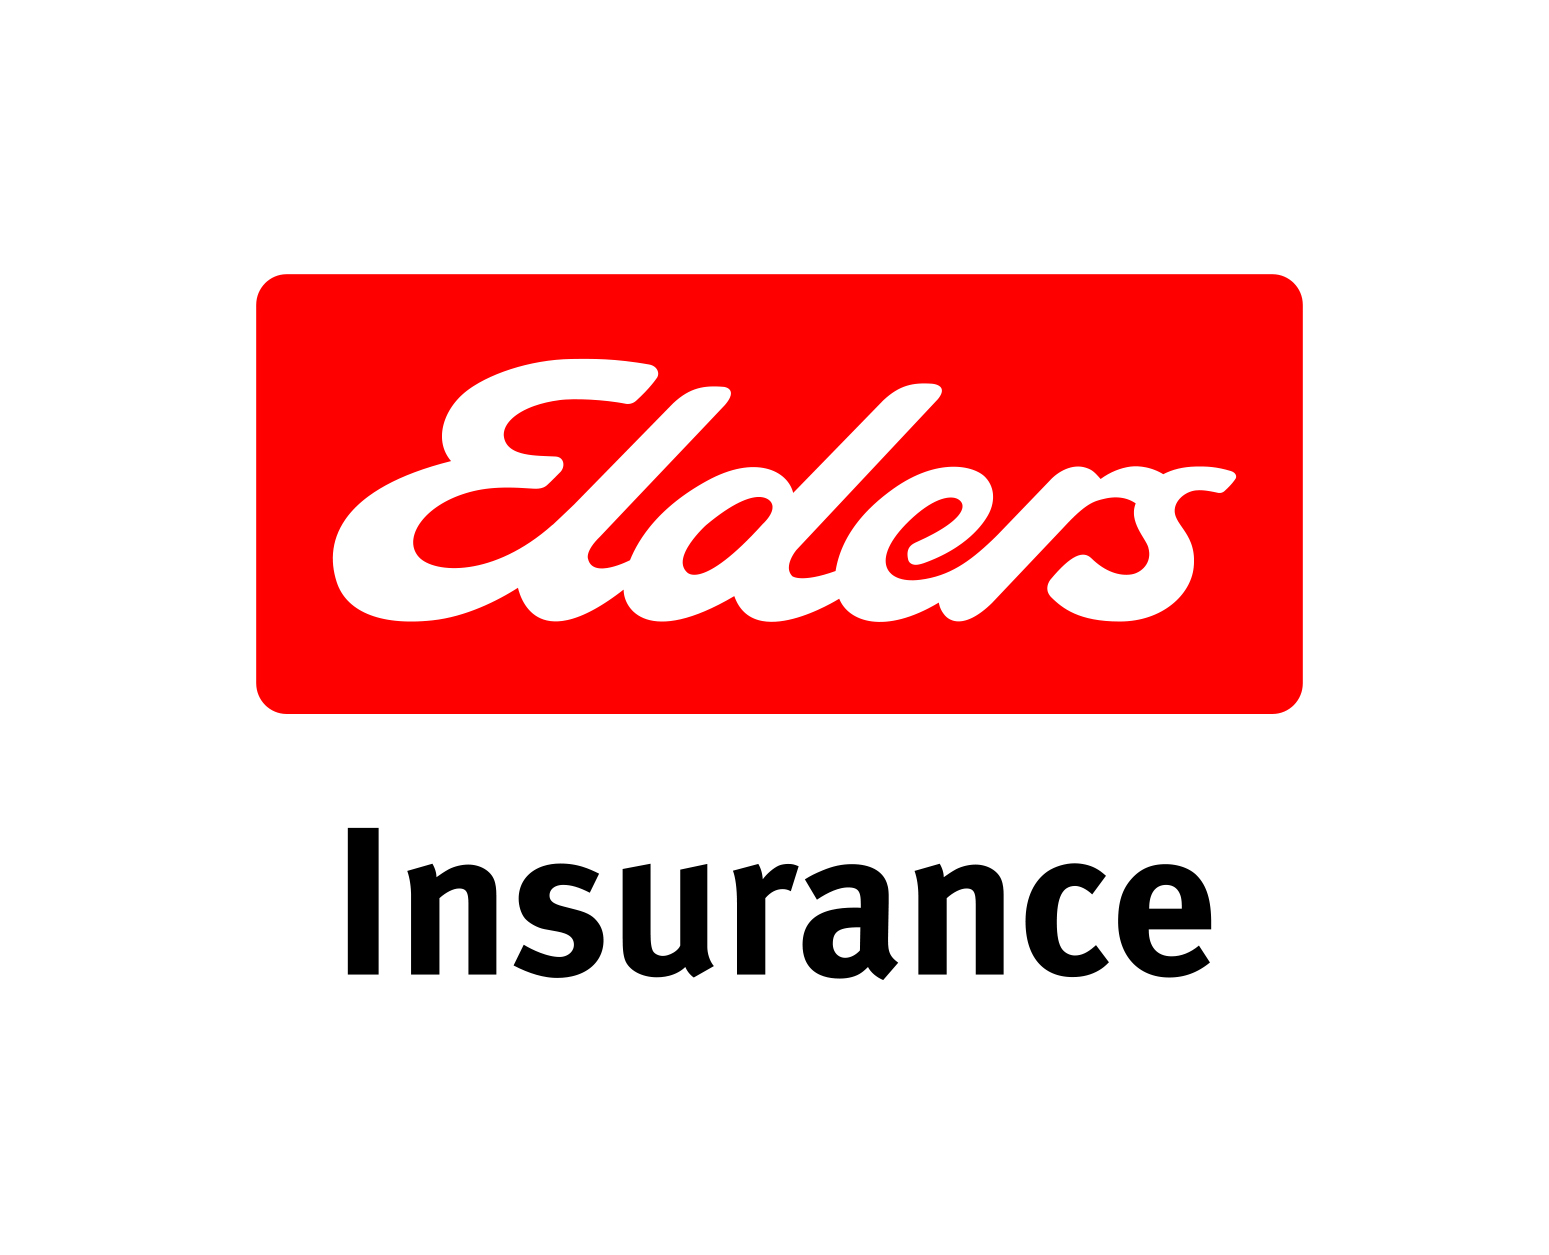 Elders+Insurance+logo+CMYK+portrait